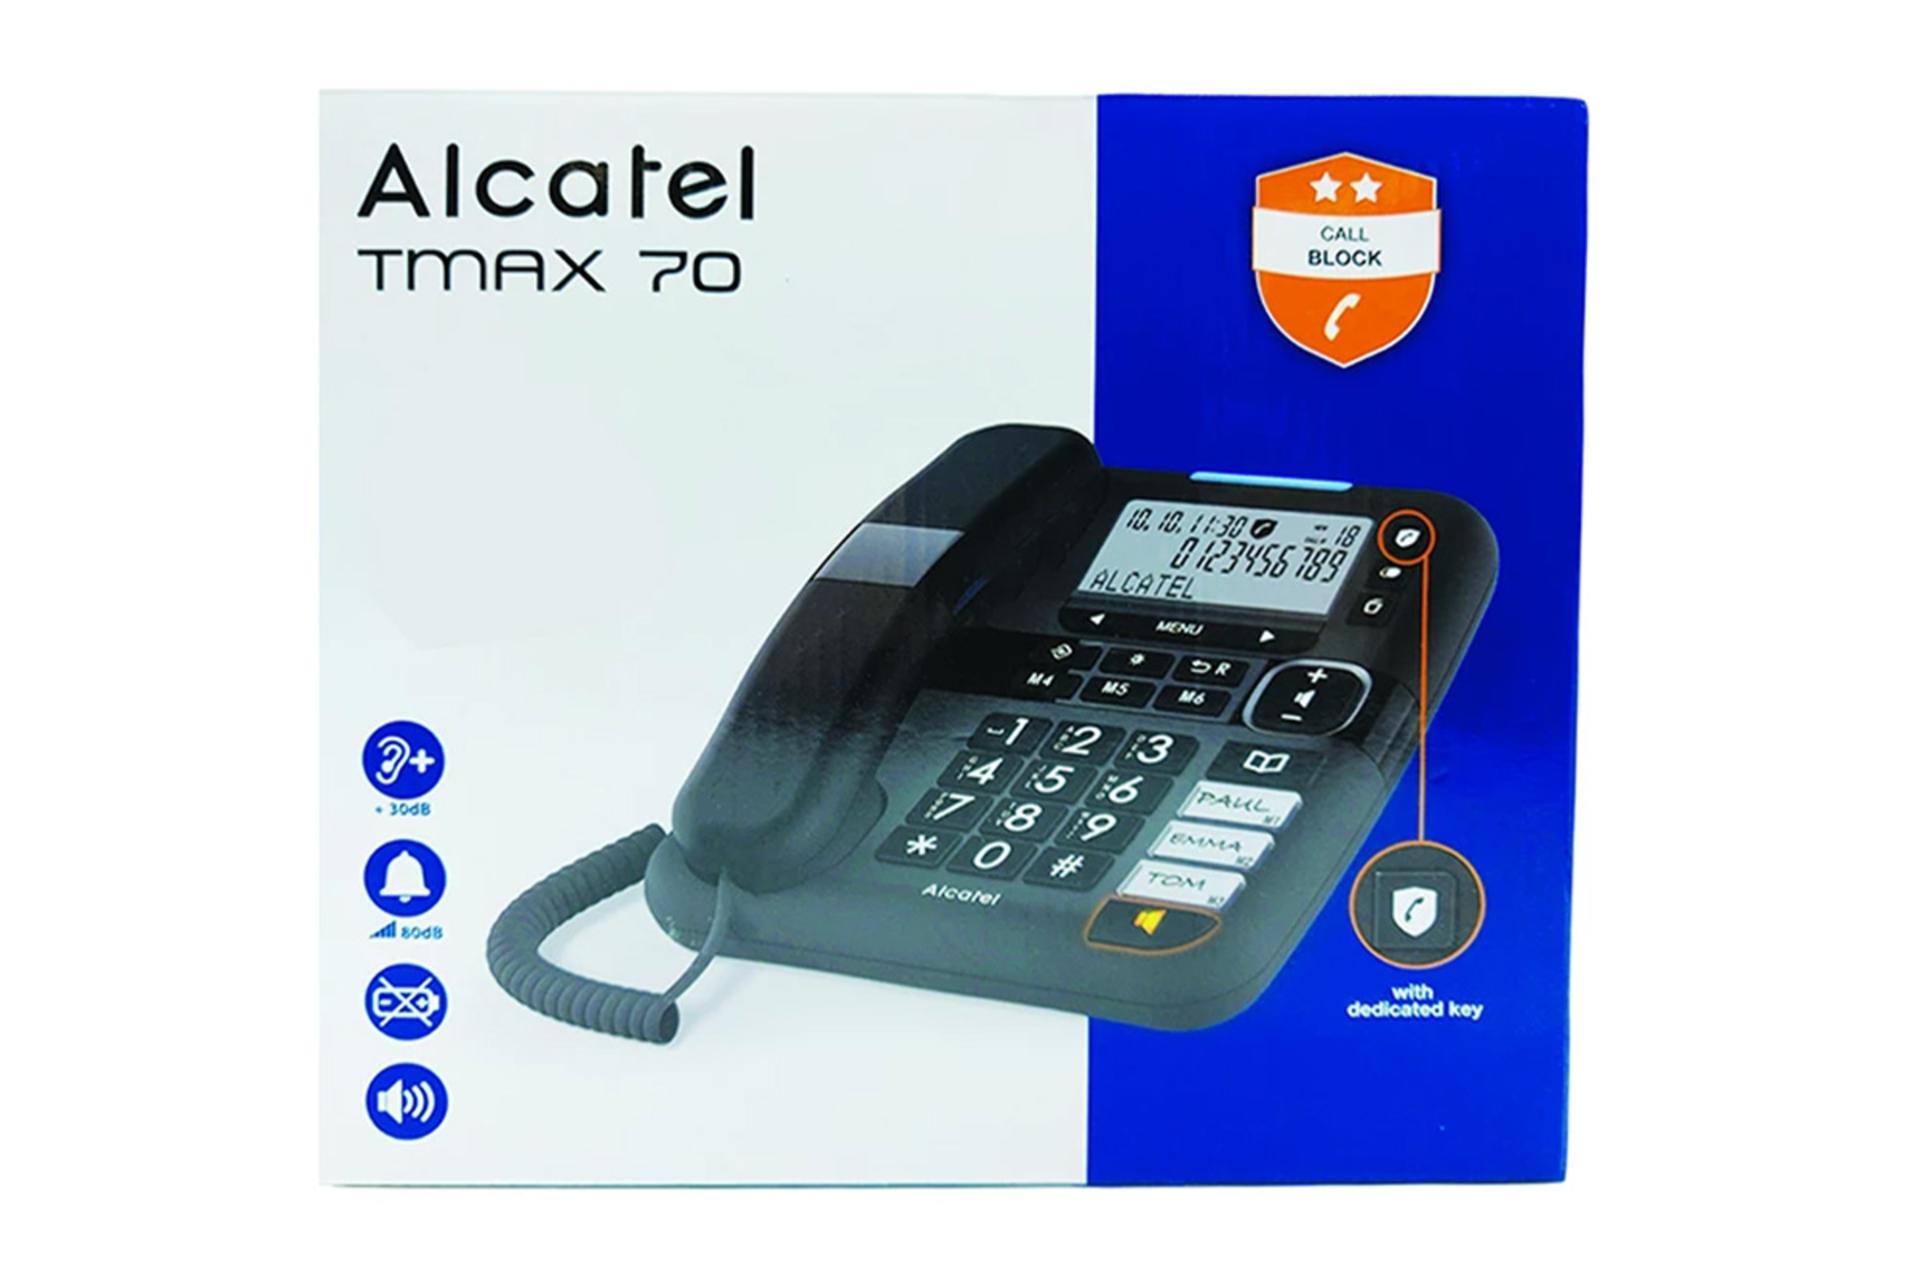 جعبه تلفن آلکاتل TMAX 70